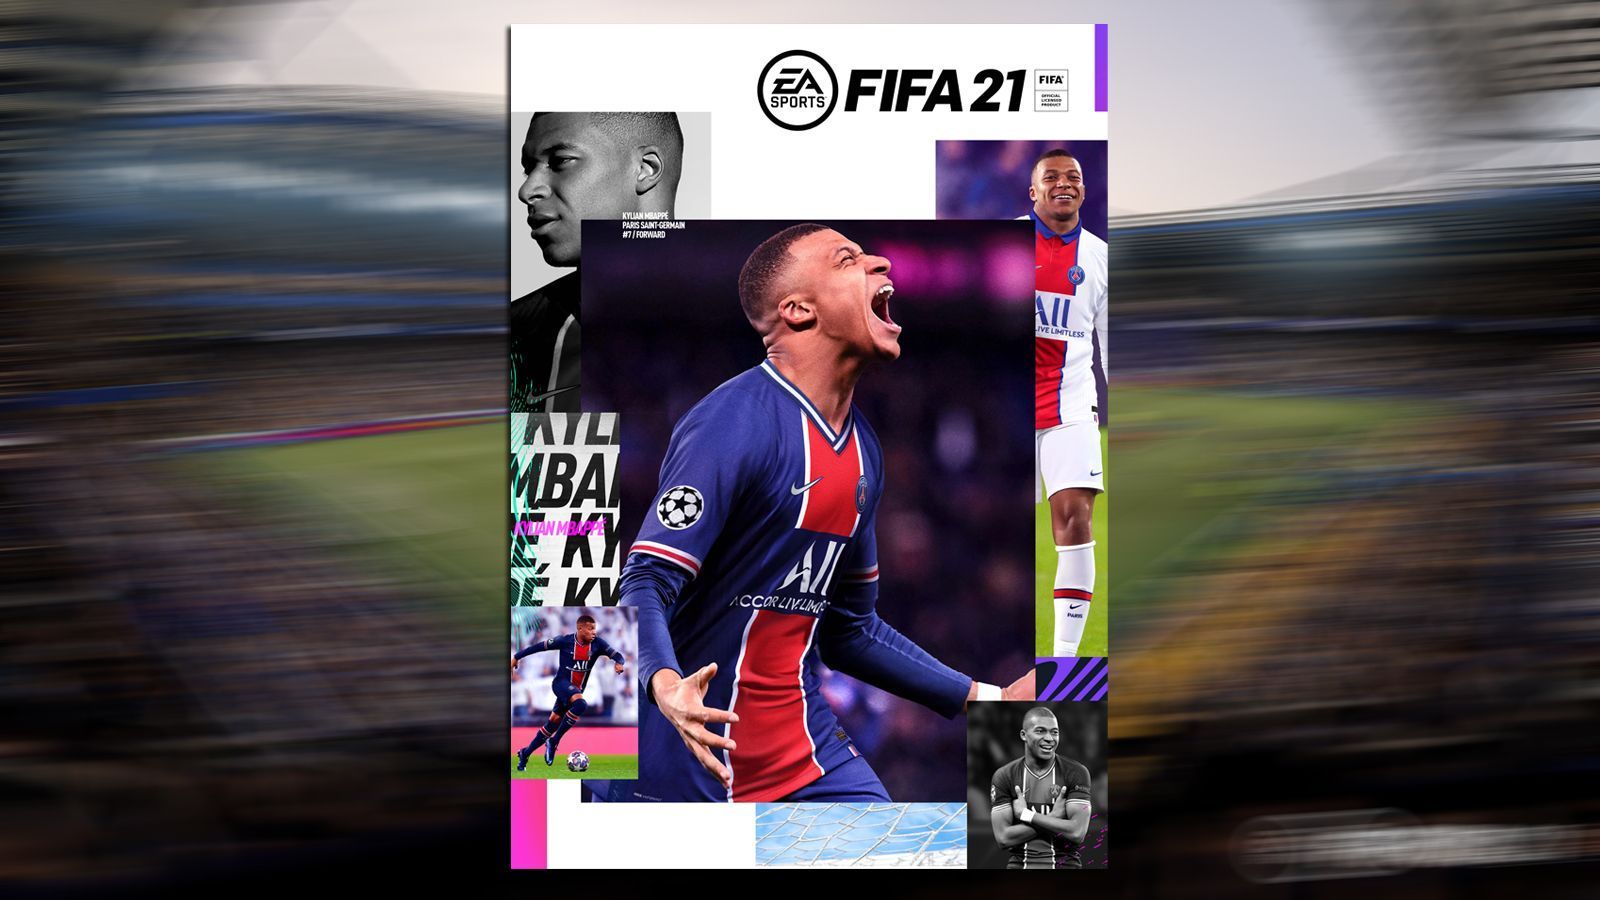 
                <strong>FIFA 21: Alle Gameplay-Neuerungen im Überblick</strong><br>
                Am 9. Oktober erscheint mit FIFA 21 der neuste Titel der beliebtesten Fußball-Simulation der Welt. ran.de gibt schon jetzt einen Überblick, welche grundlegenden Dinge sich am Gameplay des Spiel verändert haben.
              